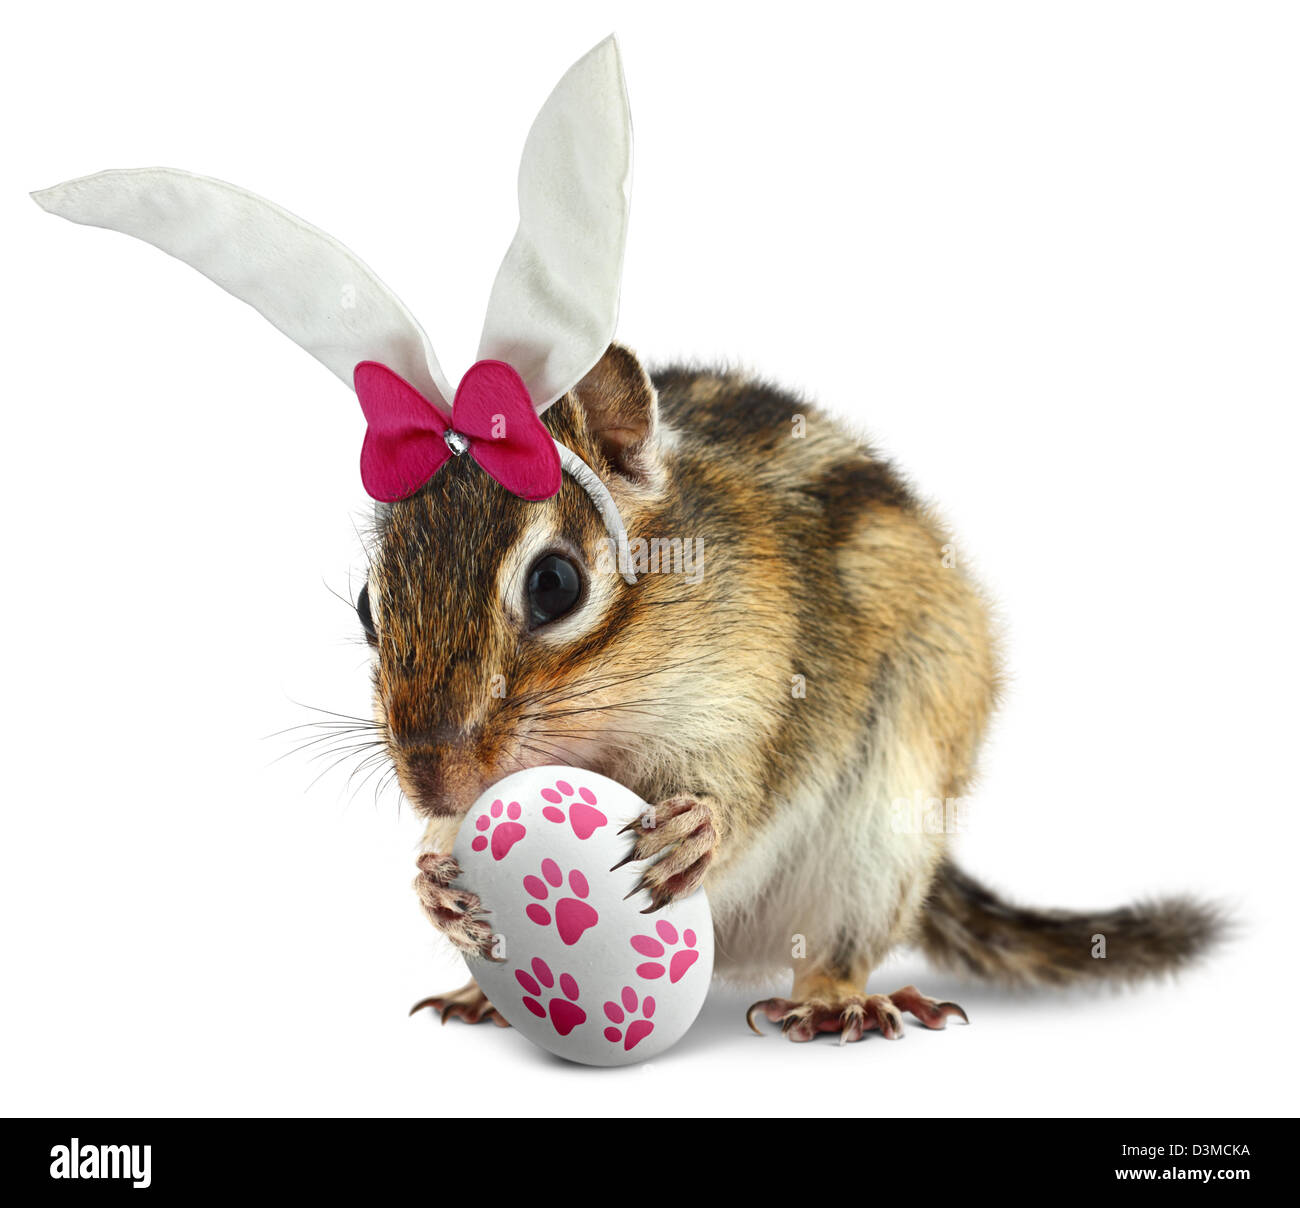 Funny Scoiattolo striado con orecchie di coniglietto e tenere premuto uovo di pasqua Foto Stock